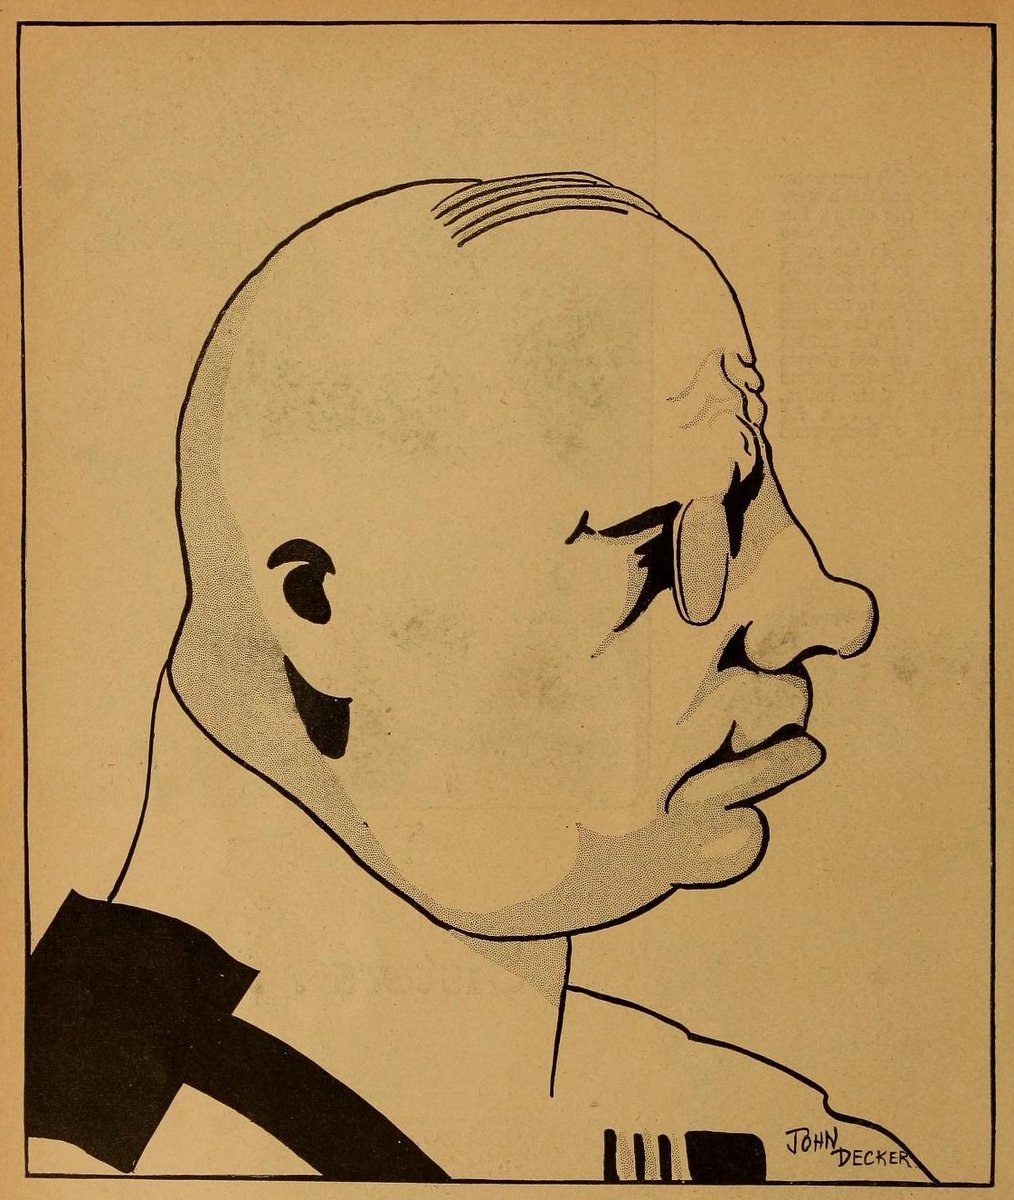 Erich von Stroheim by John Decker, 1925.